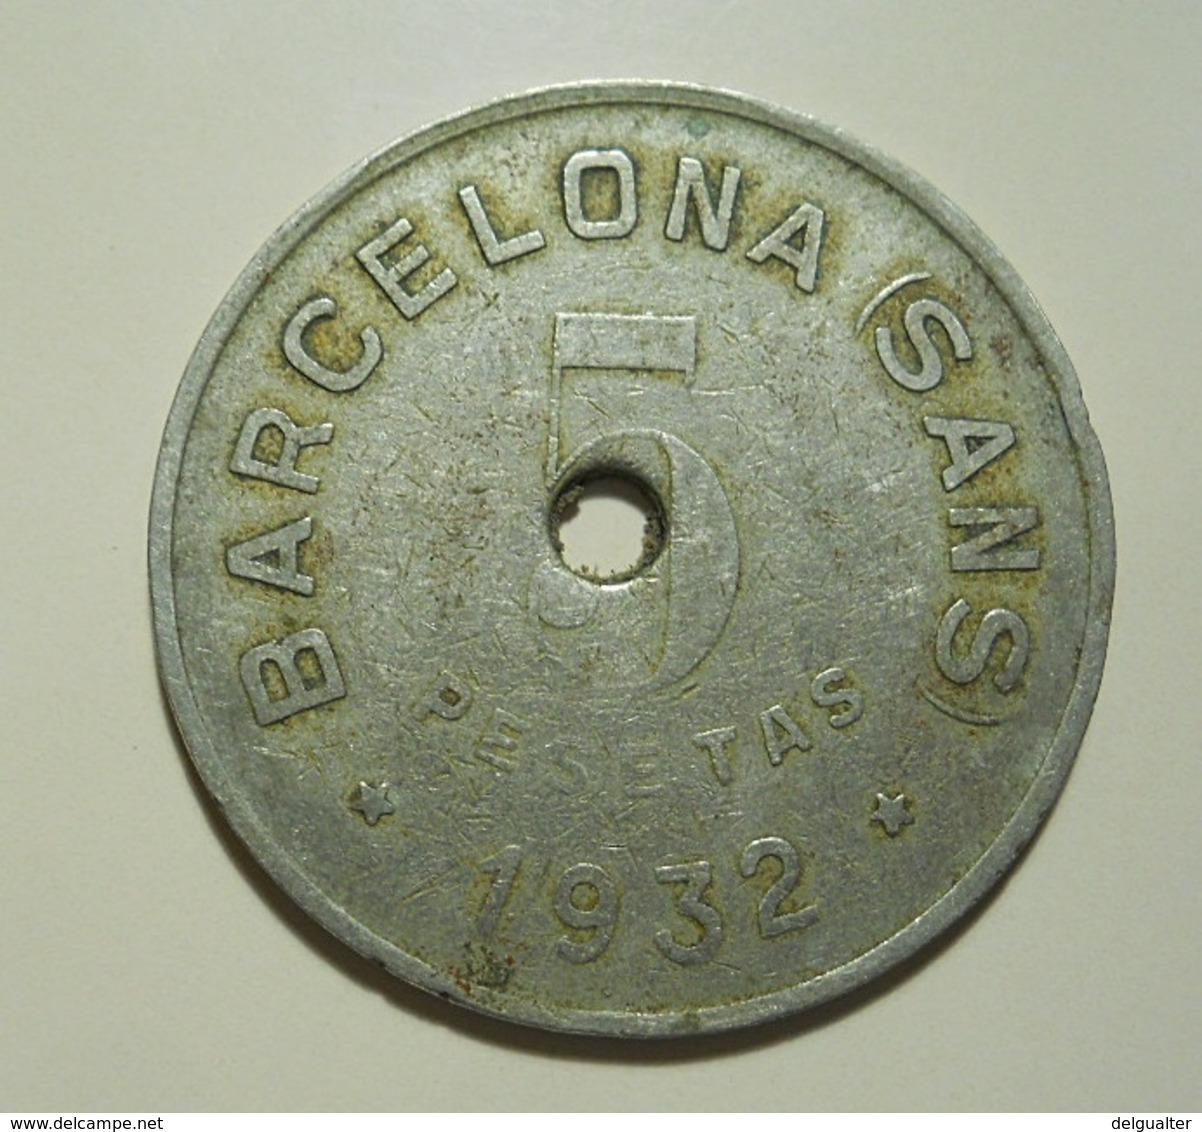 Token * La Nueva Actividad Obrera * Cooperativo * Barcelona (Sans) * 1932 * Holed - Professionnels/De Société